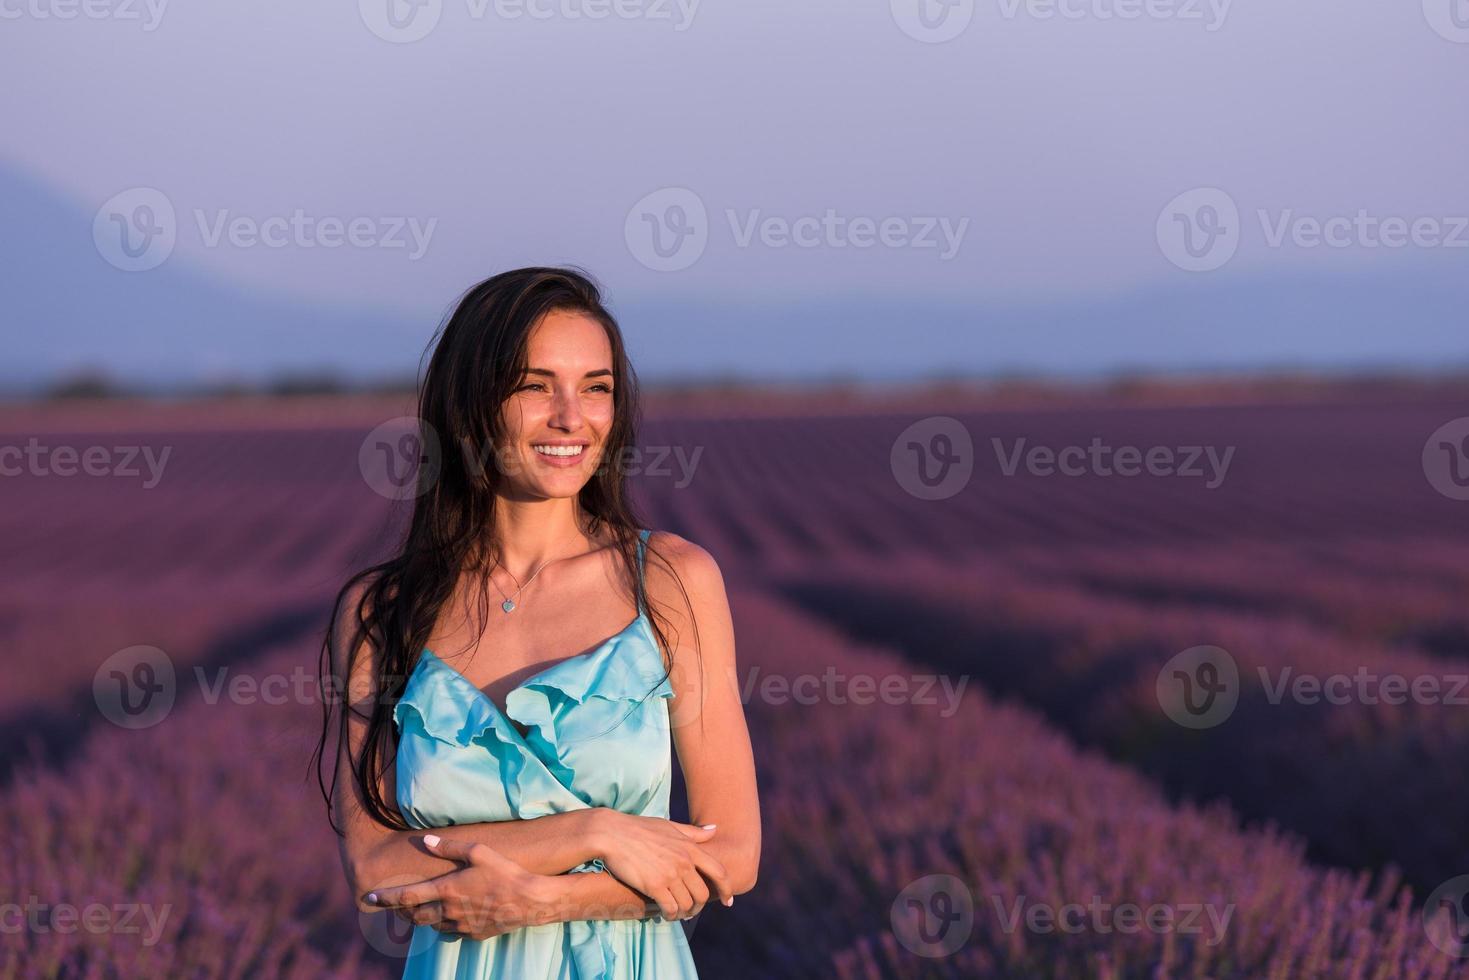 vrouw portret in lavendel bloemenveld foto